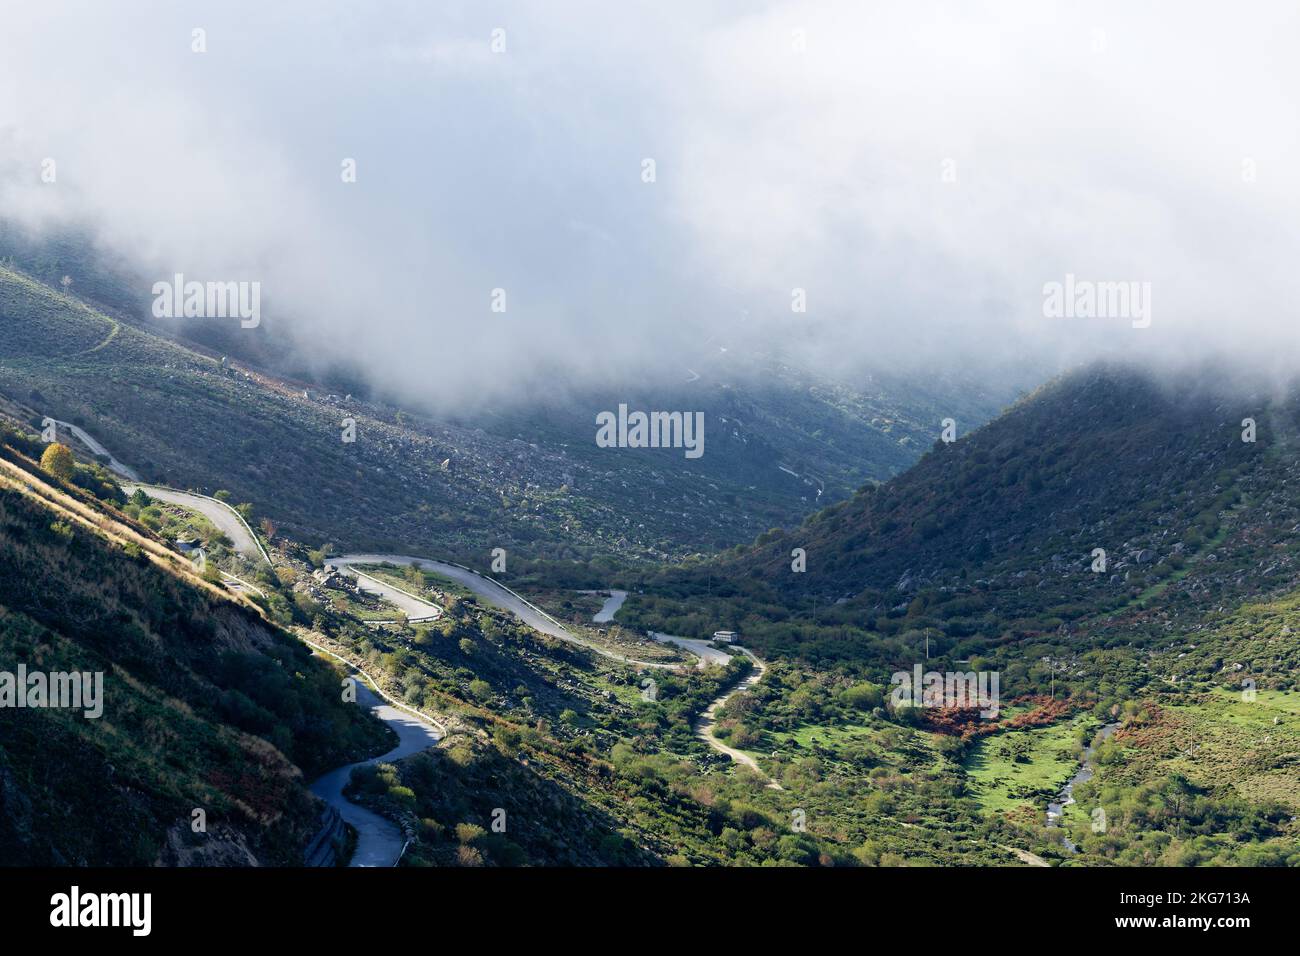 Vue sur le paysage de Serra da Estrela, la plus haute montagne du Portugal continental. Routes pittoresques avec points de vue fantastiques. Voyager dans le monde. Banque D'Images